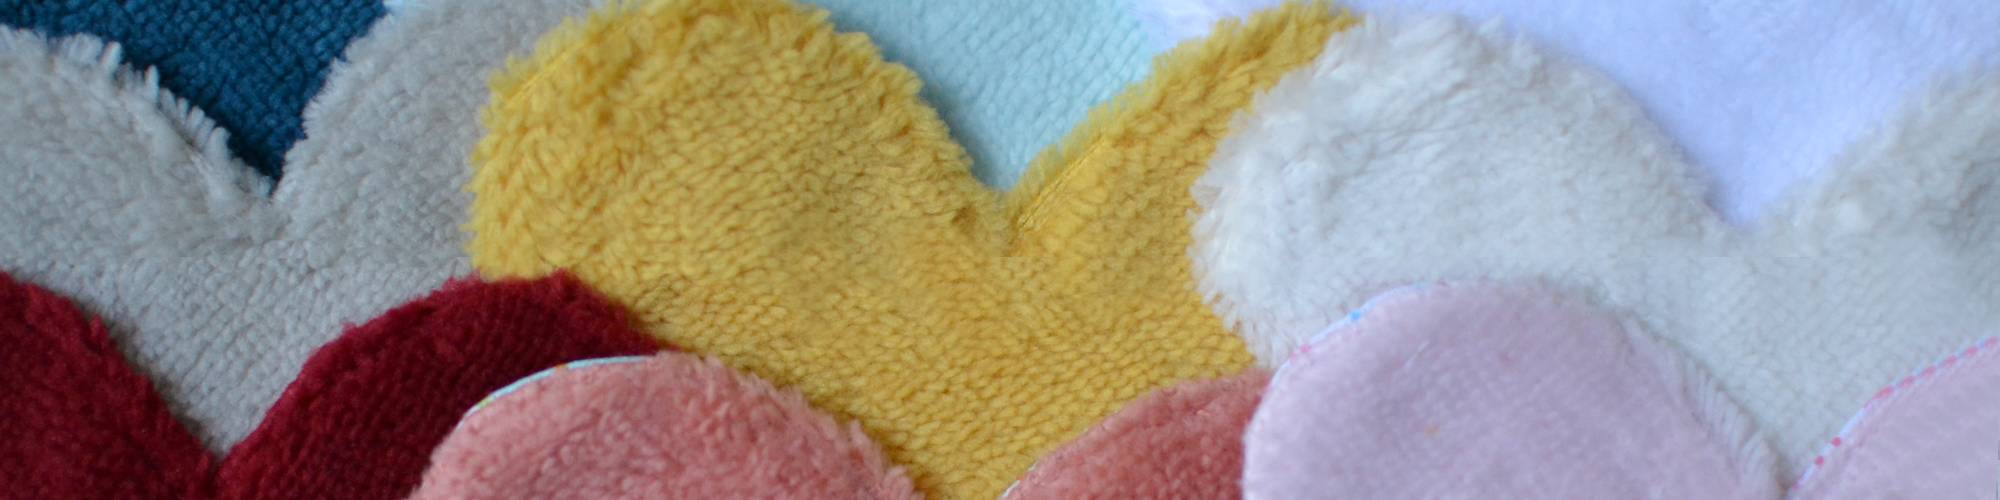 Idée cadeau pour la Saint Valentin : les lingettes lavables en forme de cœur